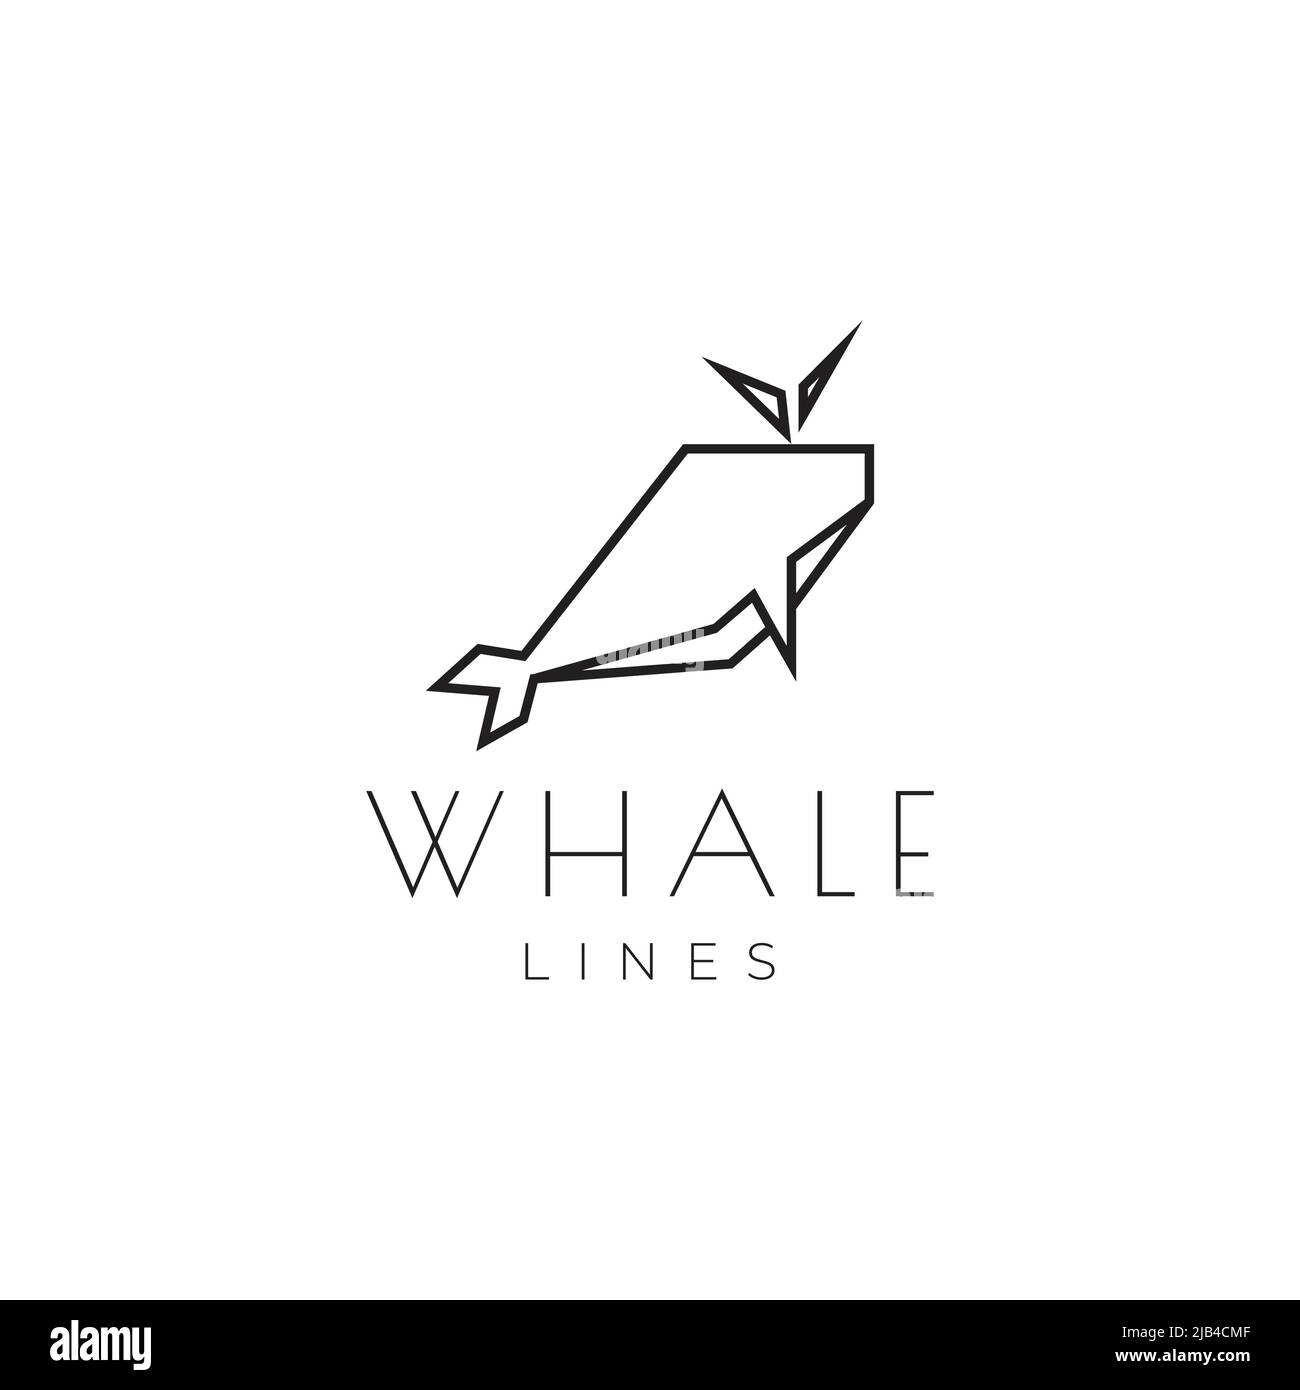 line polygon origami whale logo design vector graphic symbol icon illustration creative idea Stock Vector